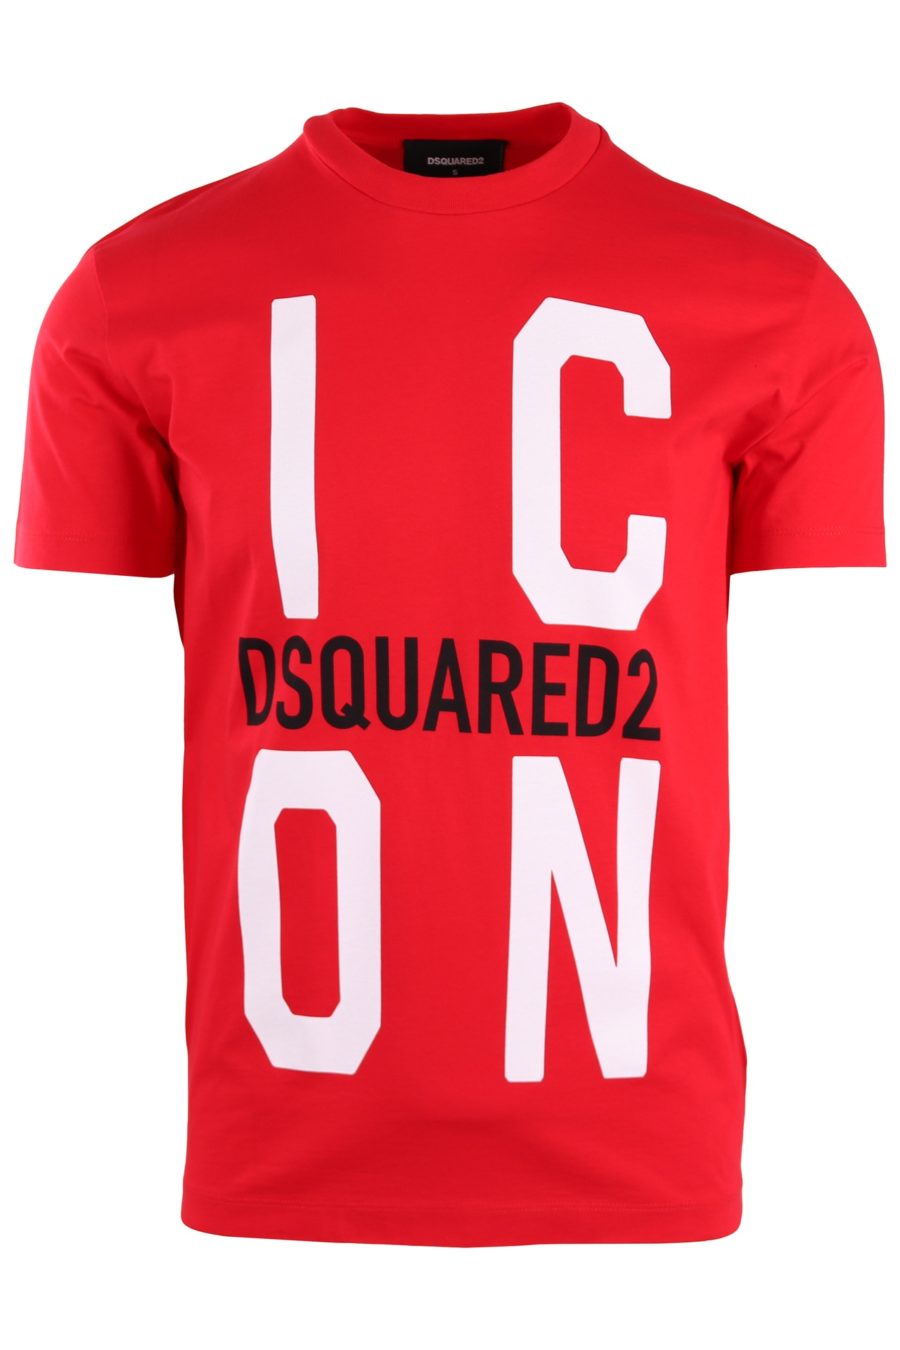 T-shirt Dsquared2 rouge avec grand logo "Icon" - 5dddf9b0d1c8d398084894c2cf09534a9f72151d